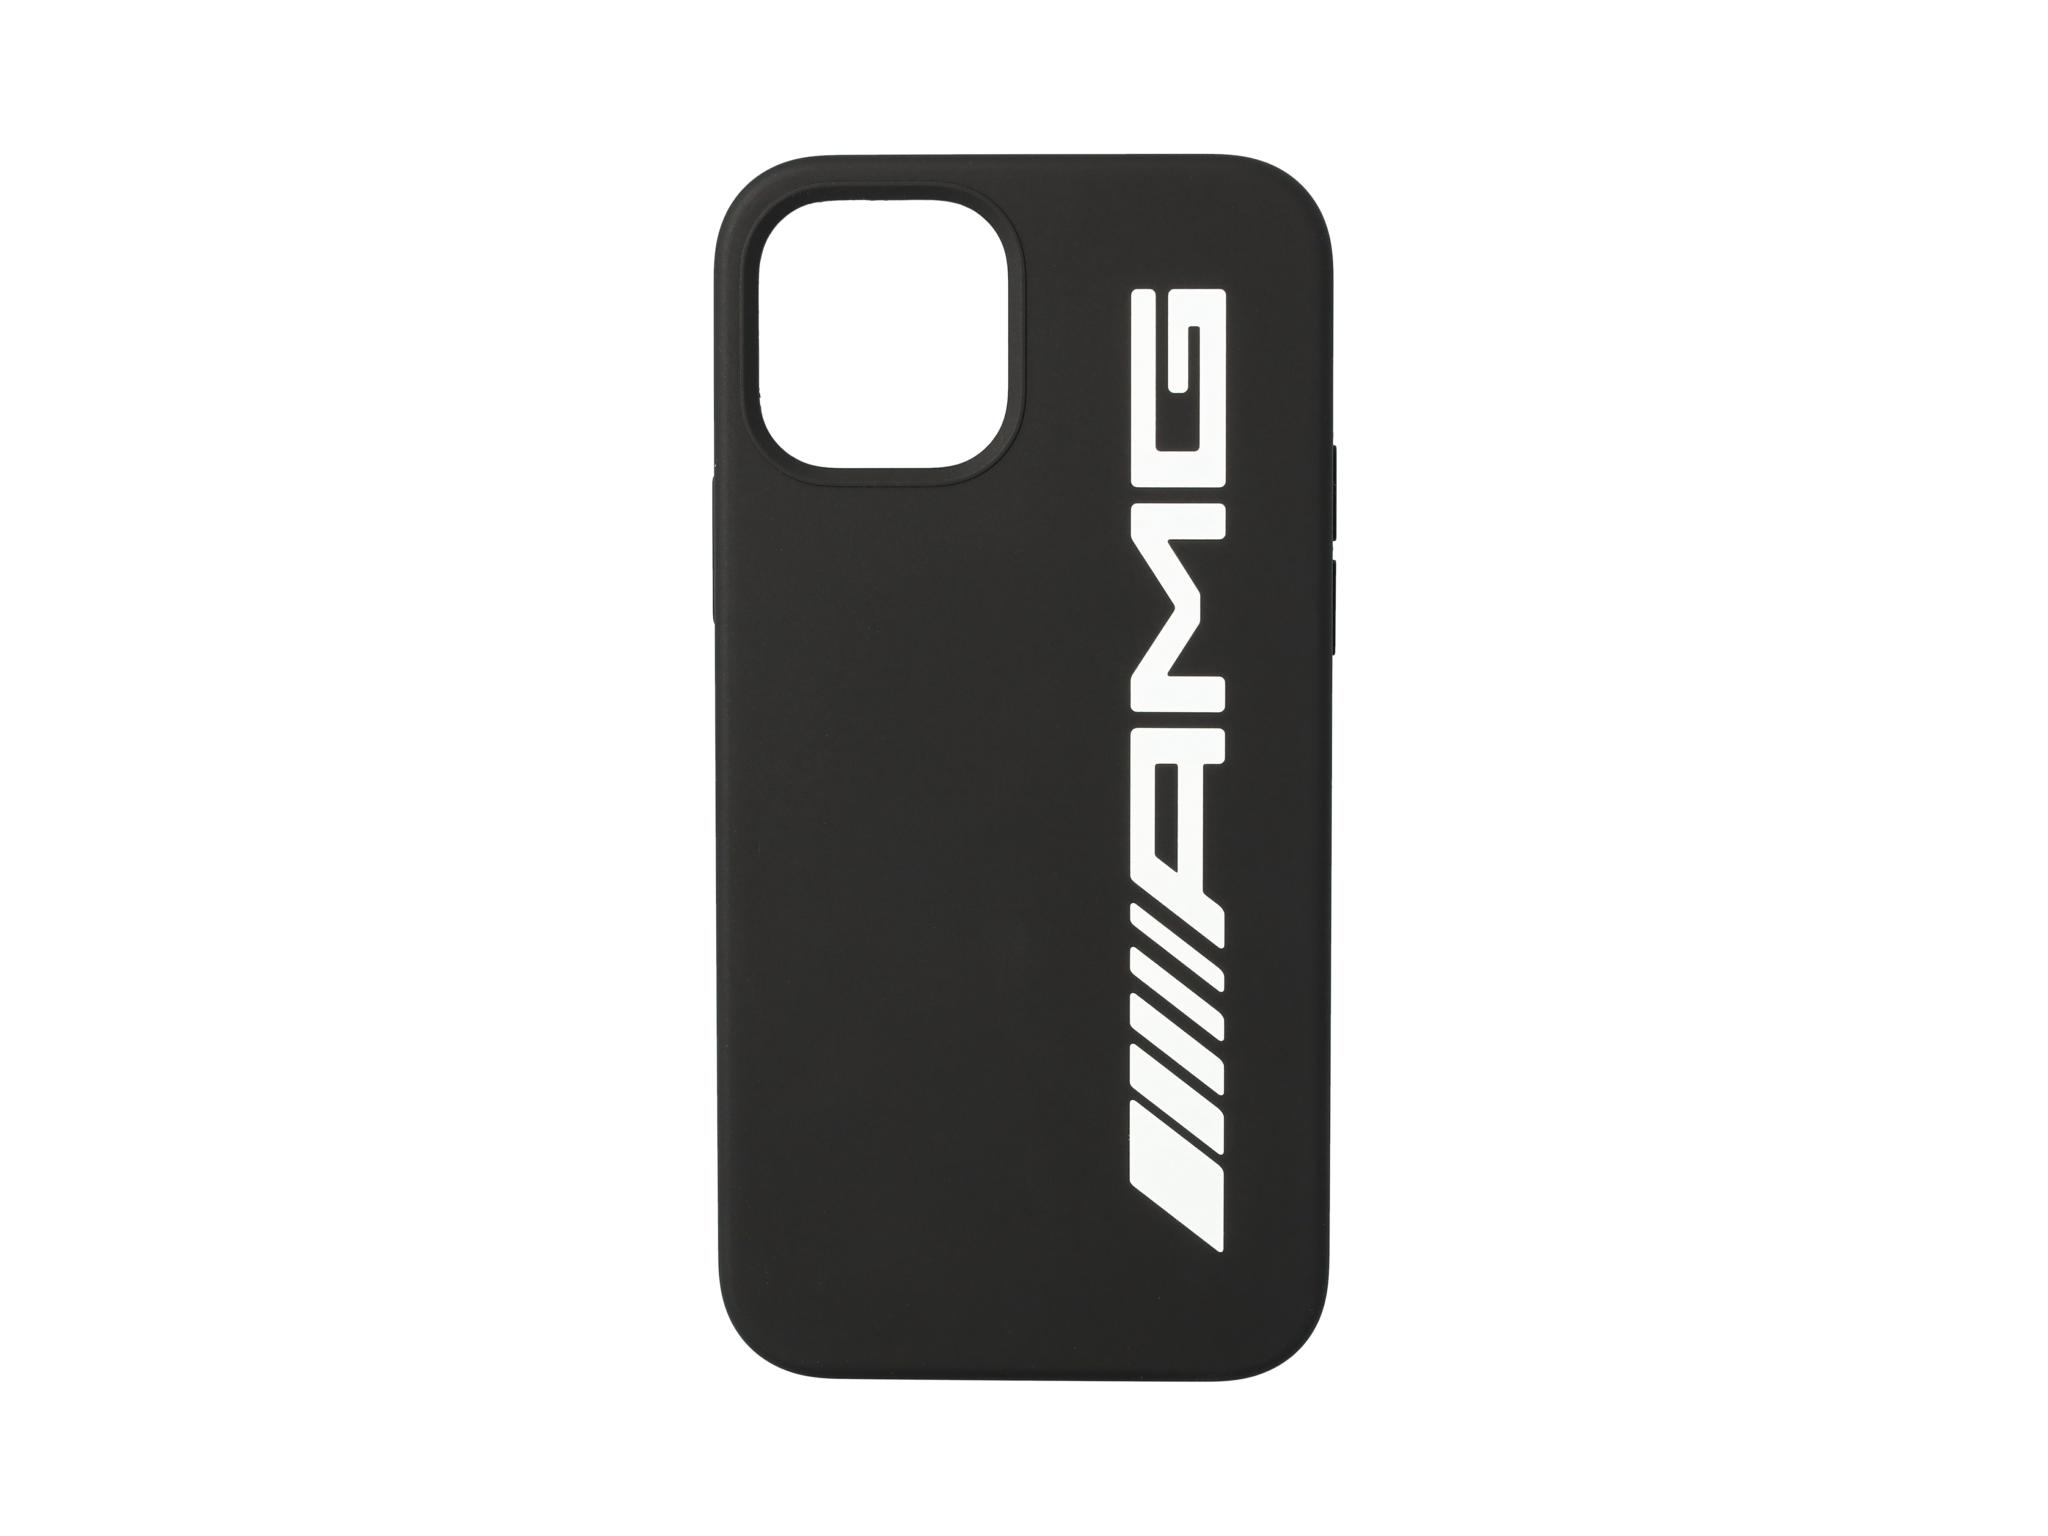 AMG Hülle für iPhone® 12 Pro/iPhone® 12 - schwarz / weiß, Polycarbonat /  Silikon /  Mikrofaser